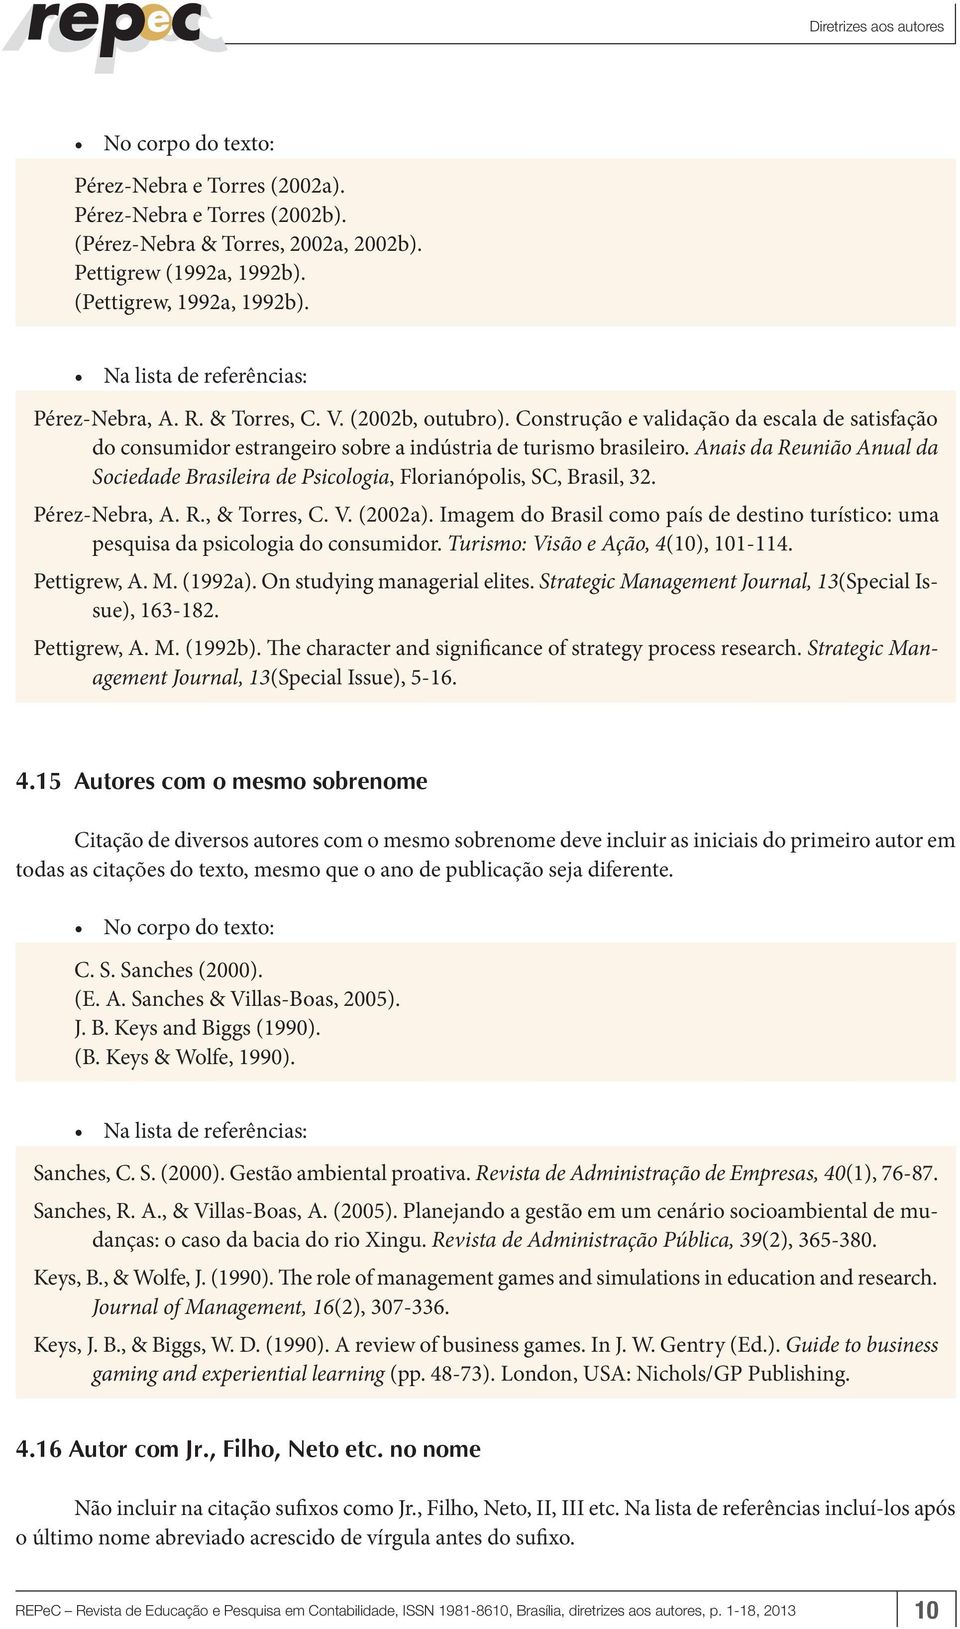 Anais da Reunião Anual da Sociedade Brasileira de Psicologia, Florianópolis, SC, Brasil, 32. Pérez-Nebra, A. R., & Torres, C. V. (2002a).